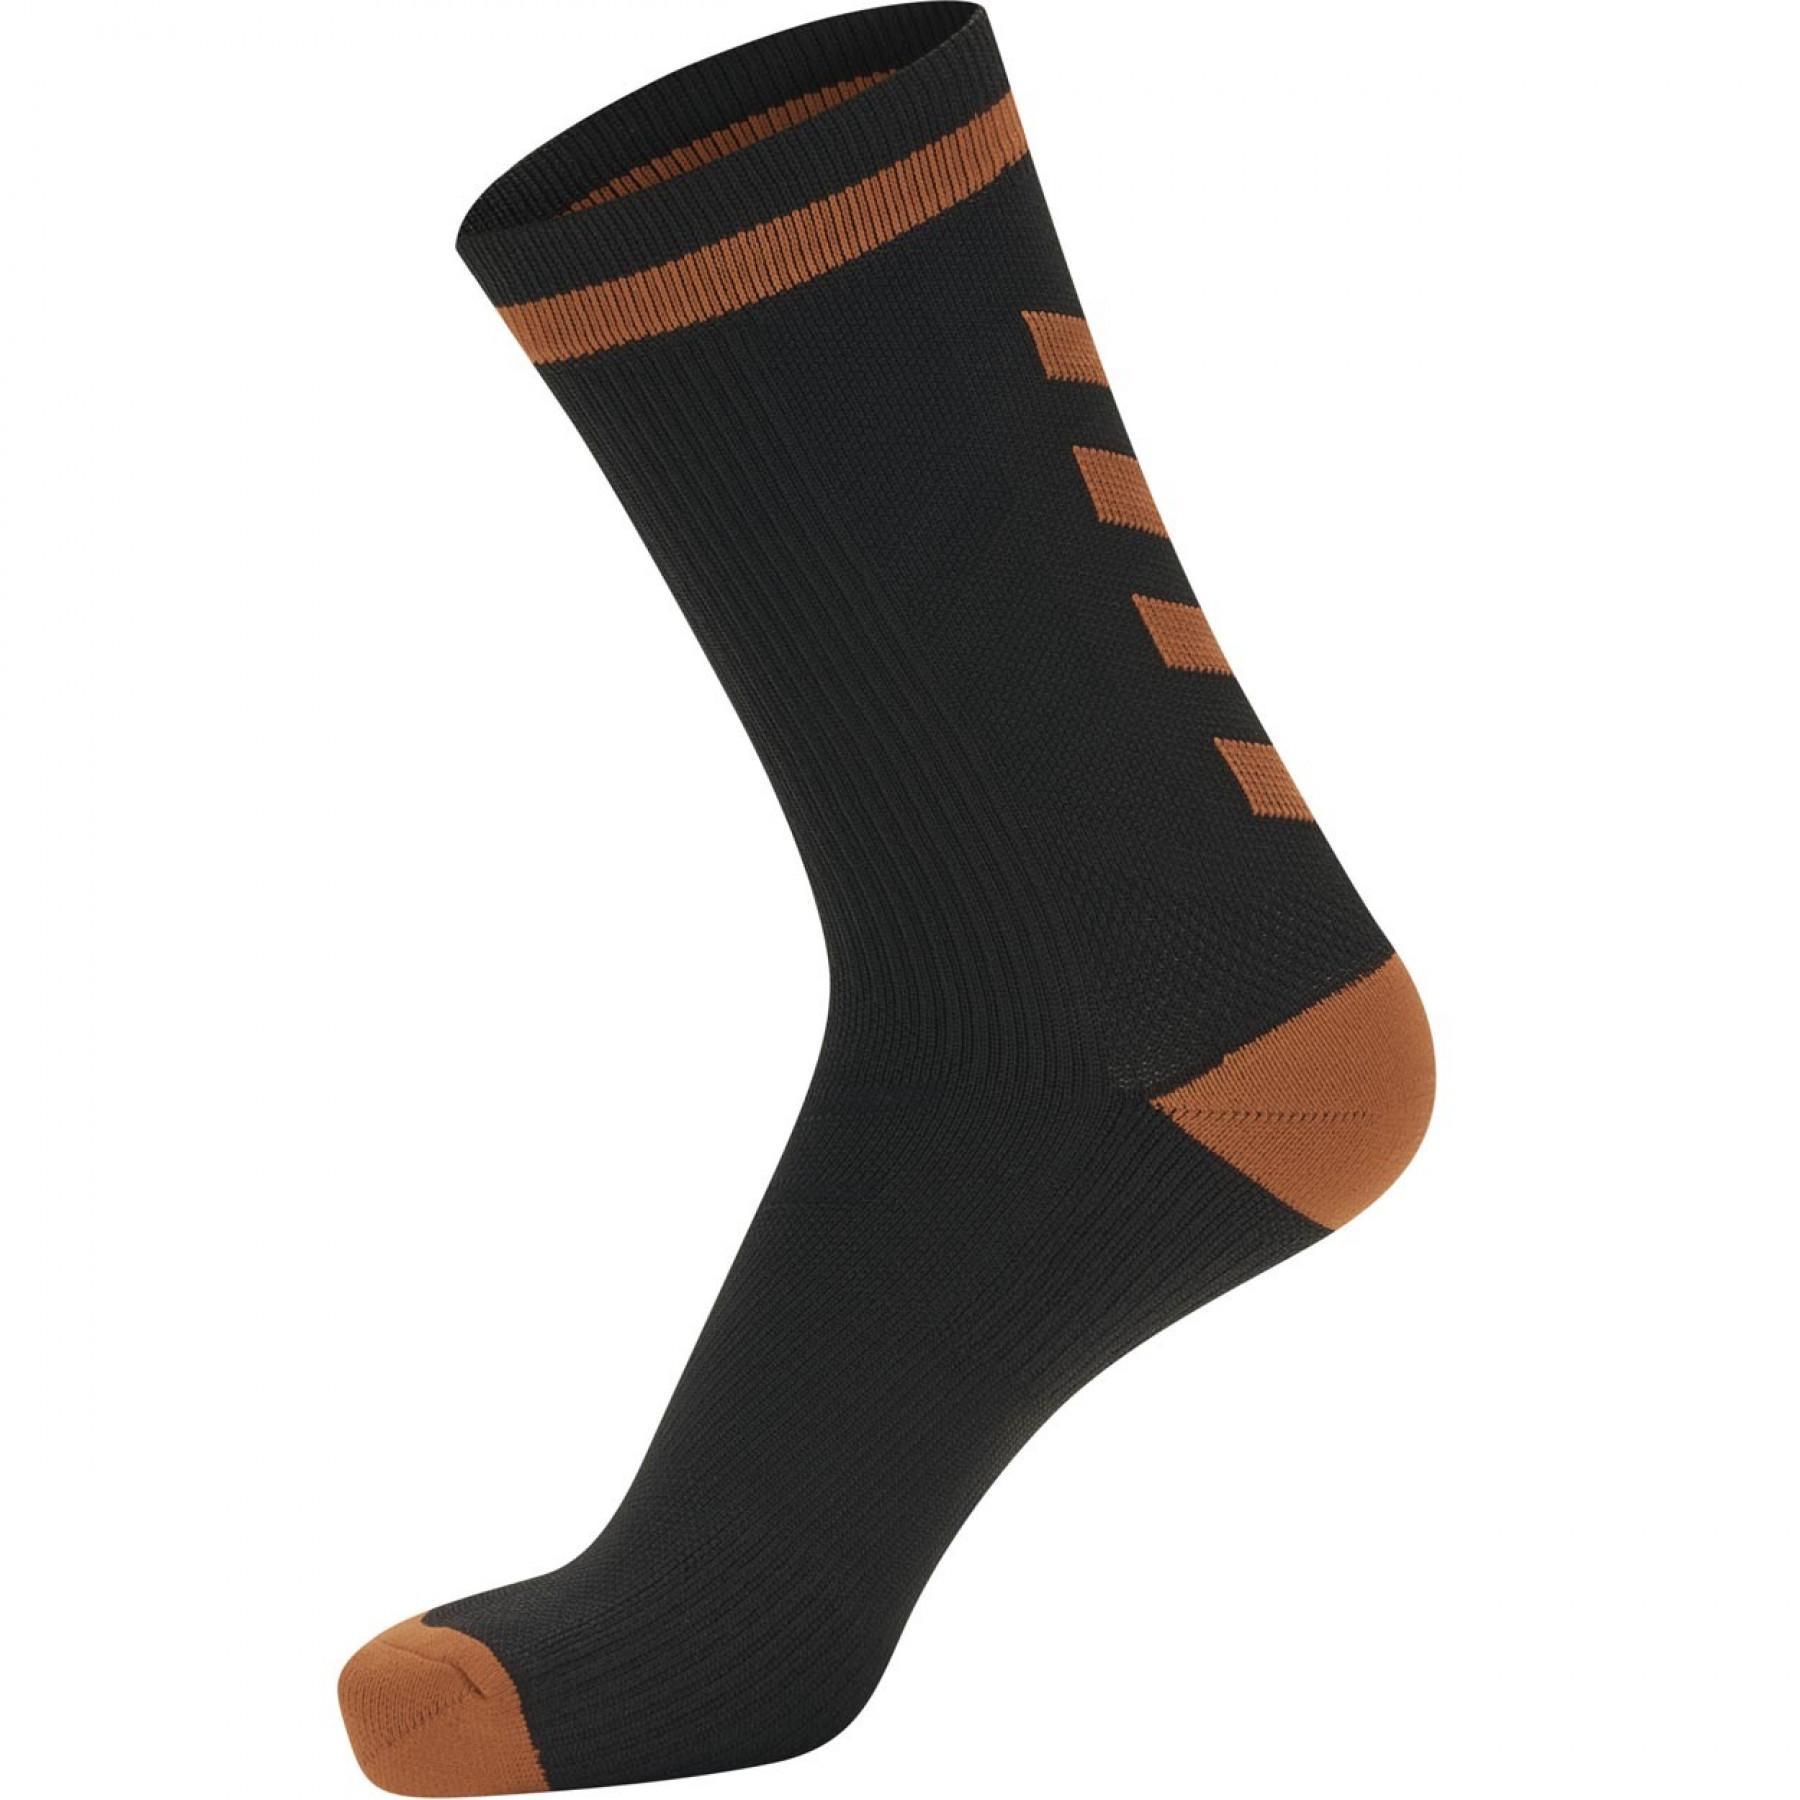 Pack of 3 pairs of dark socks Hummel Elite Indoor Low (coloris au choix)